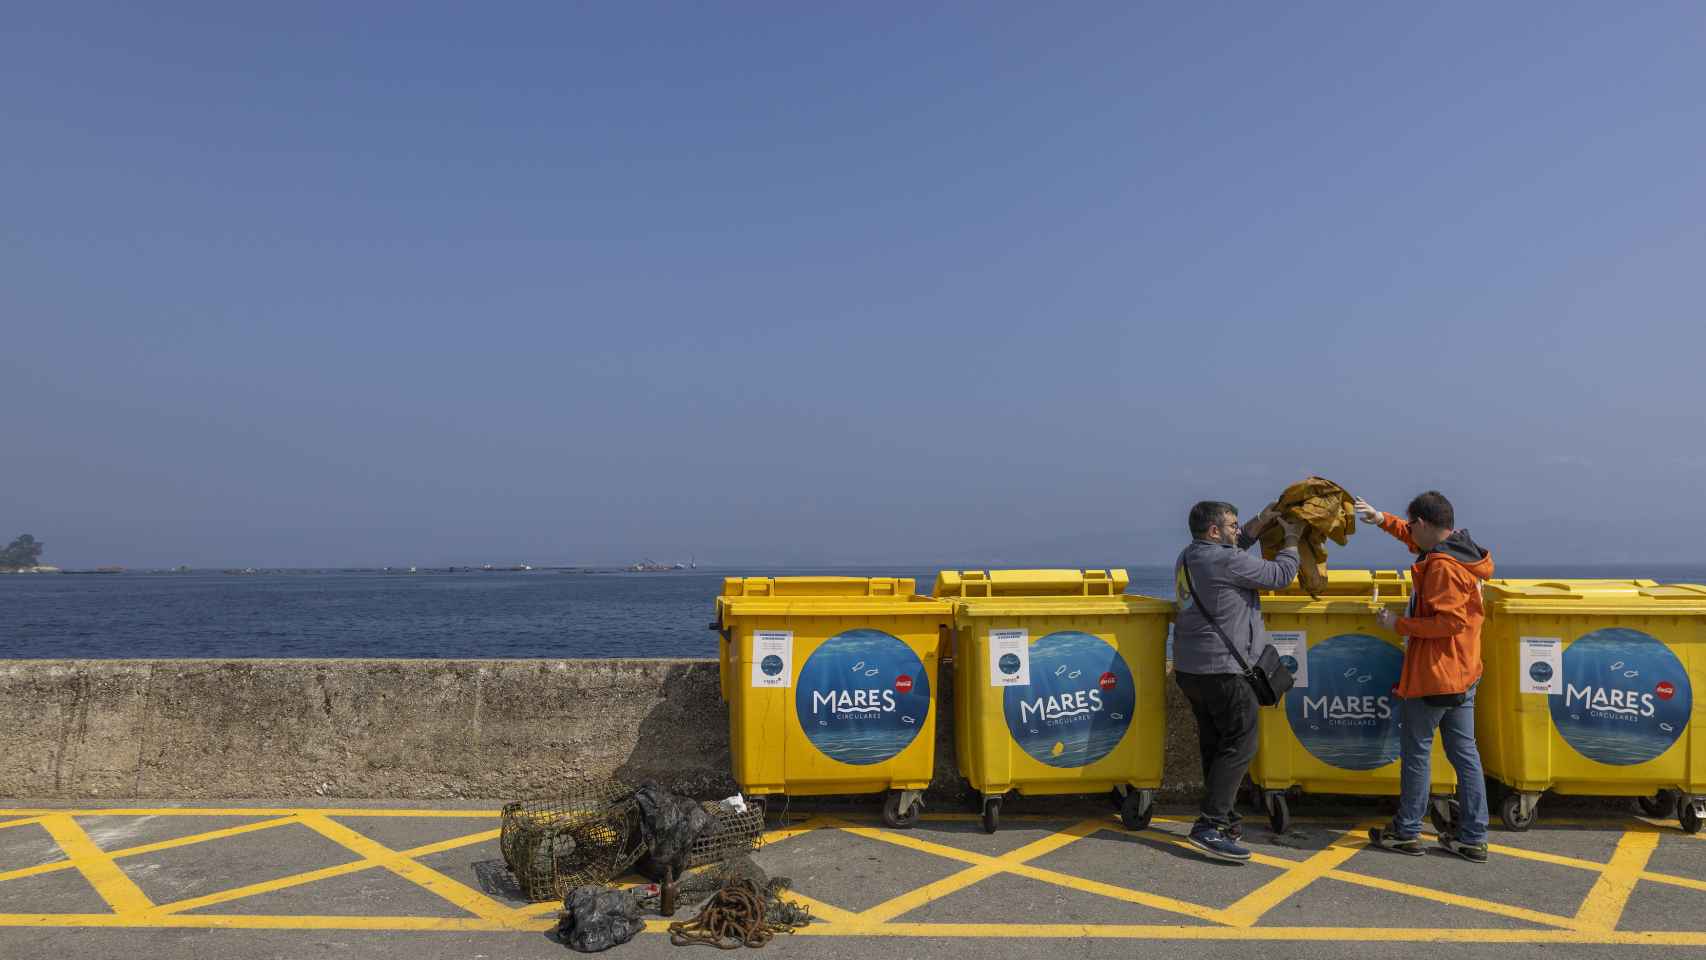 Juan Pablo Pérez y Rubén Rodríguez, técnicos de Vertidos Cero, depositan una red con residuos en los contenedores de Mares Circulares colocados en el puerto de Breu.